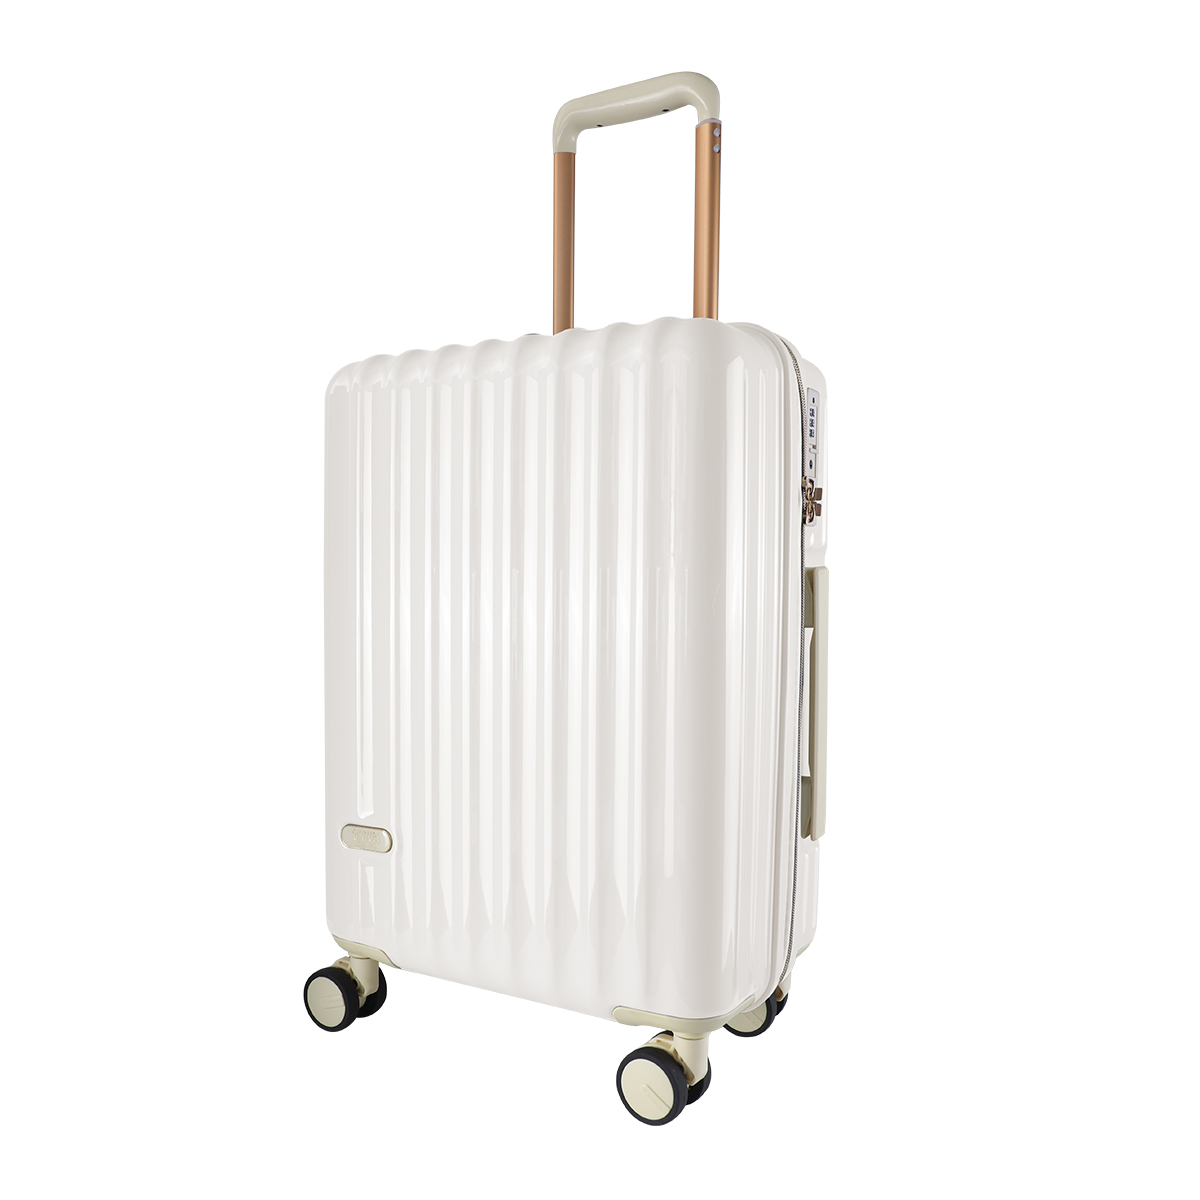 スーツケース 軽量 Sサイズ 39L 1〜2泊 ピンク 機内持ち込みサイズ TSAロック キャリーケース キャリーバッグ おしゃれ 旅行用品